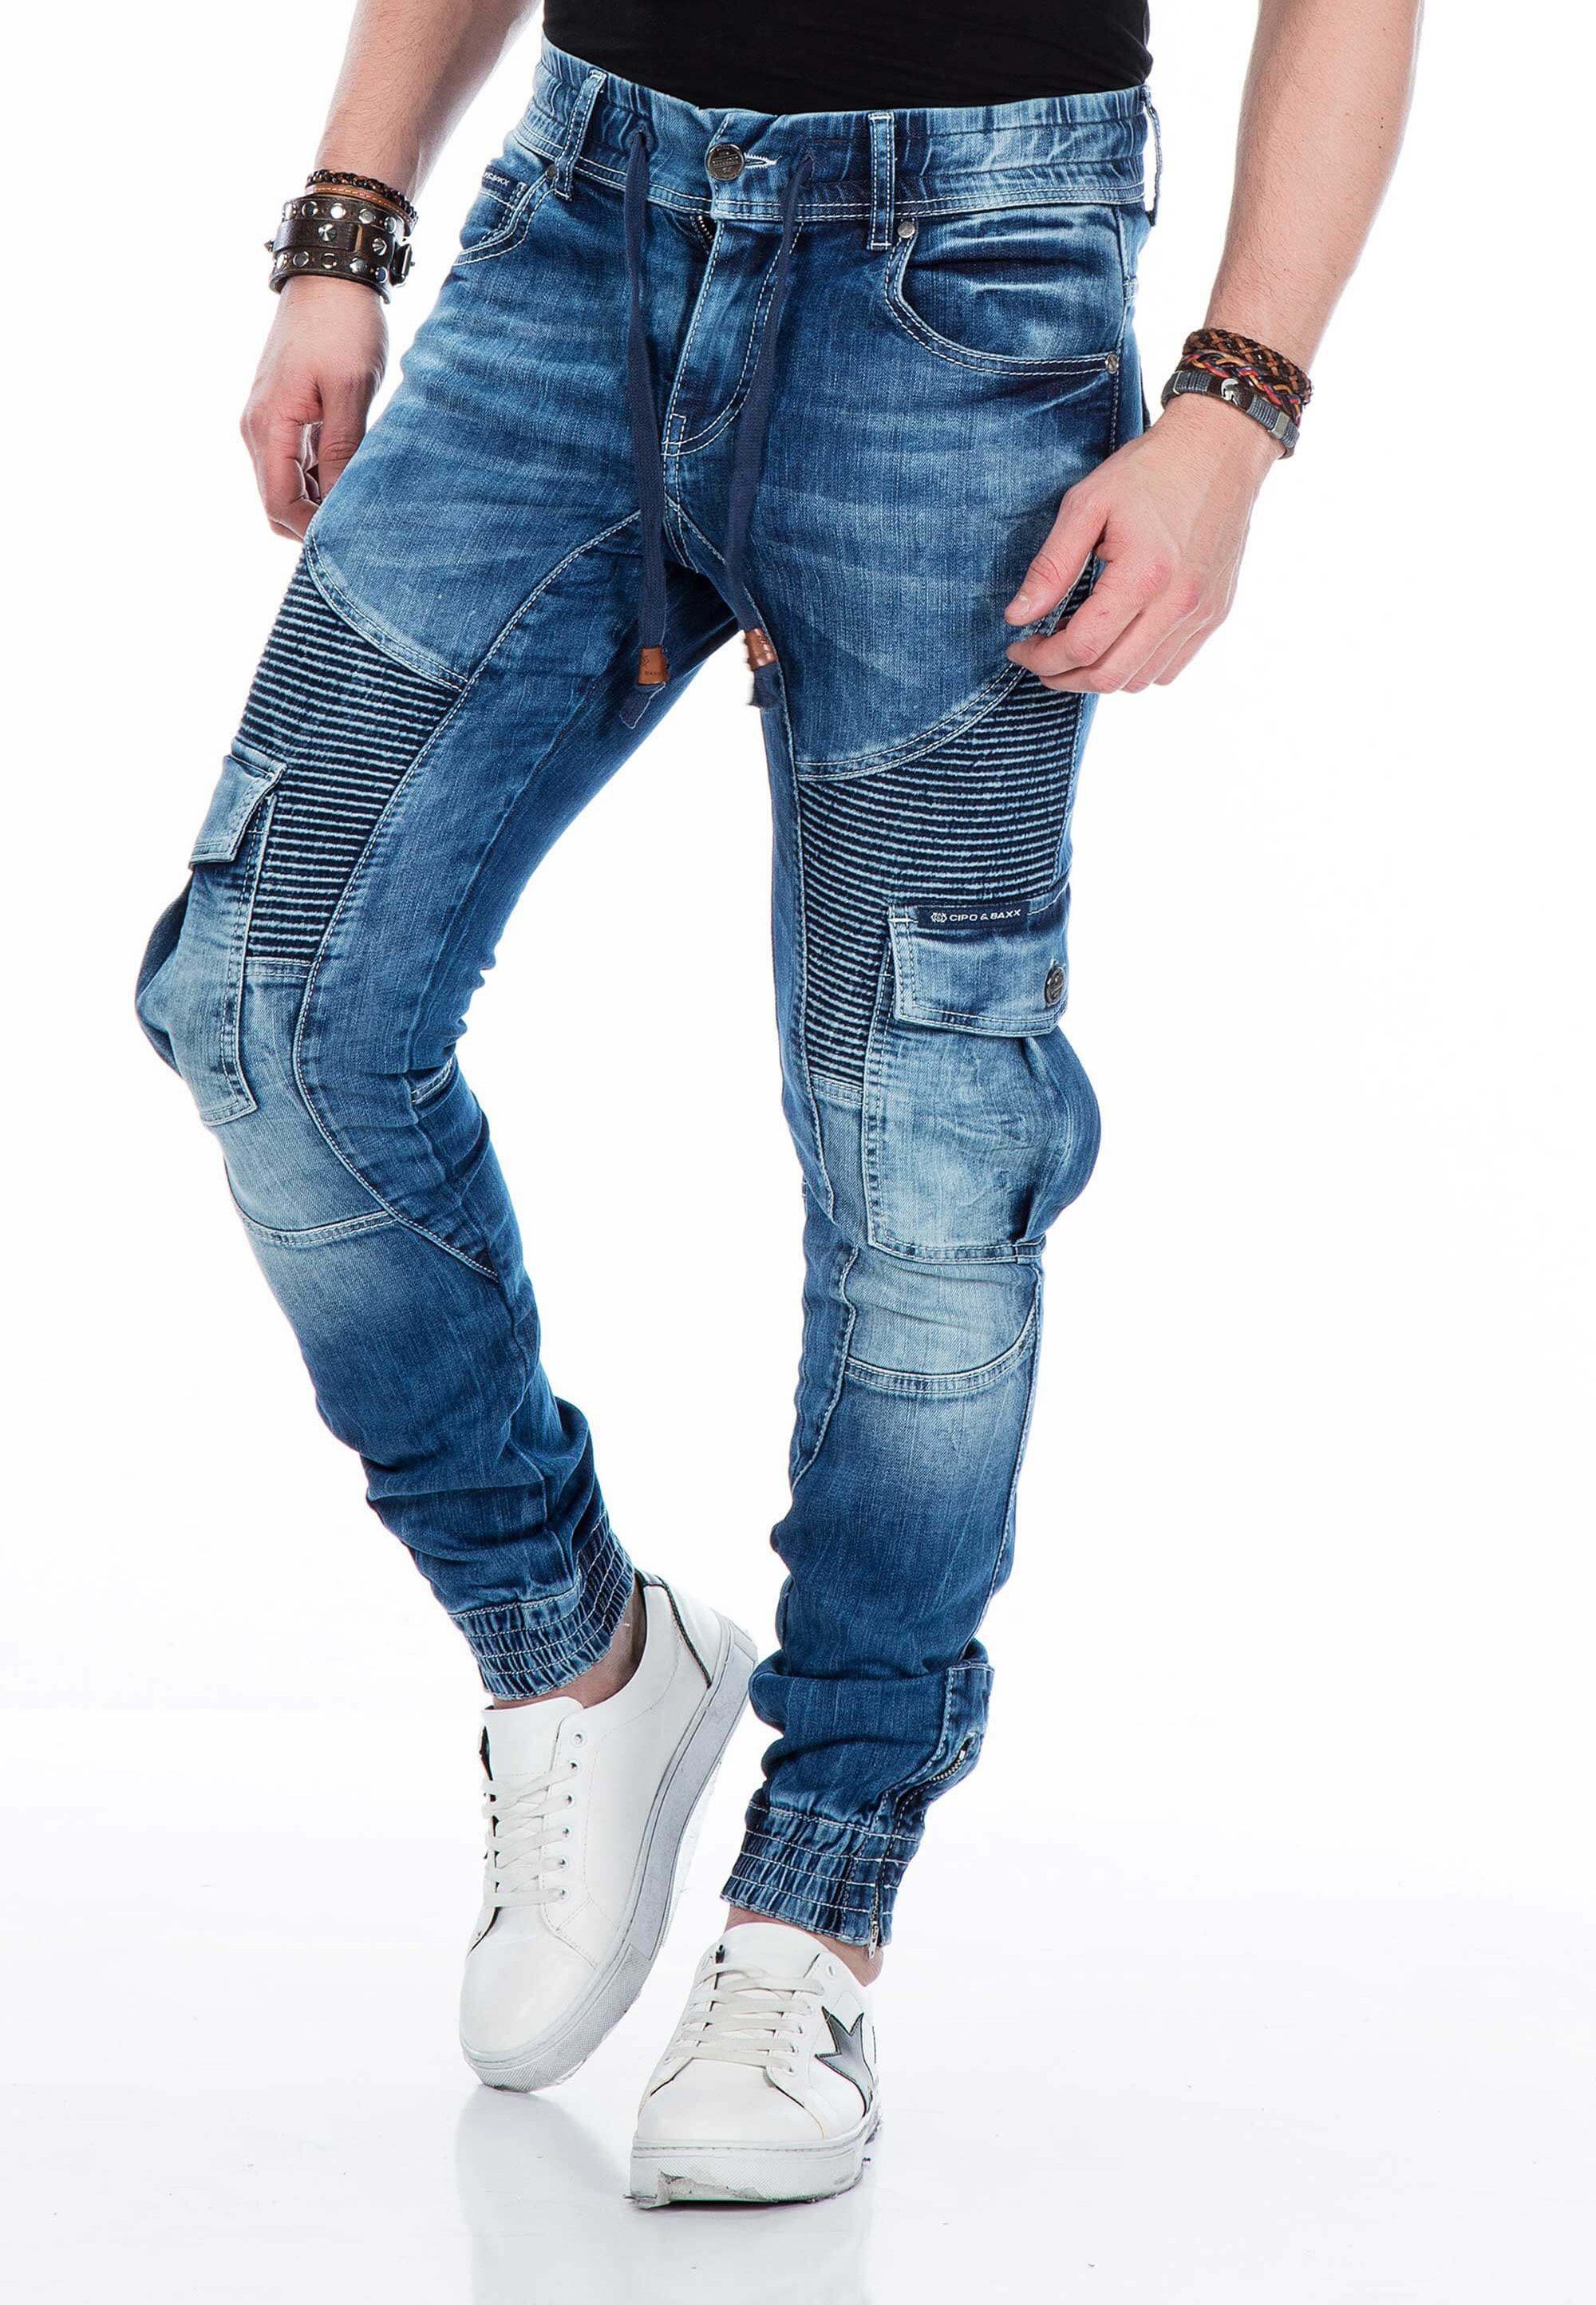 Baxx elastischen Jeans mit Cipo Saum & blau Bündchen Bequeme am